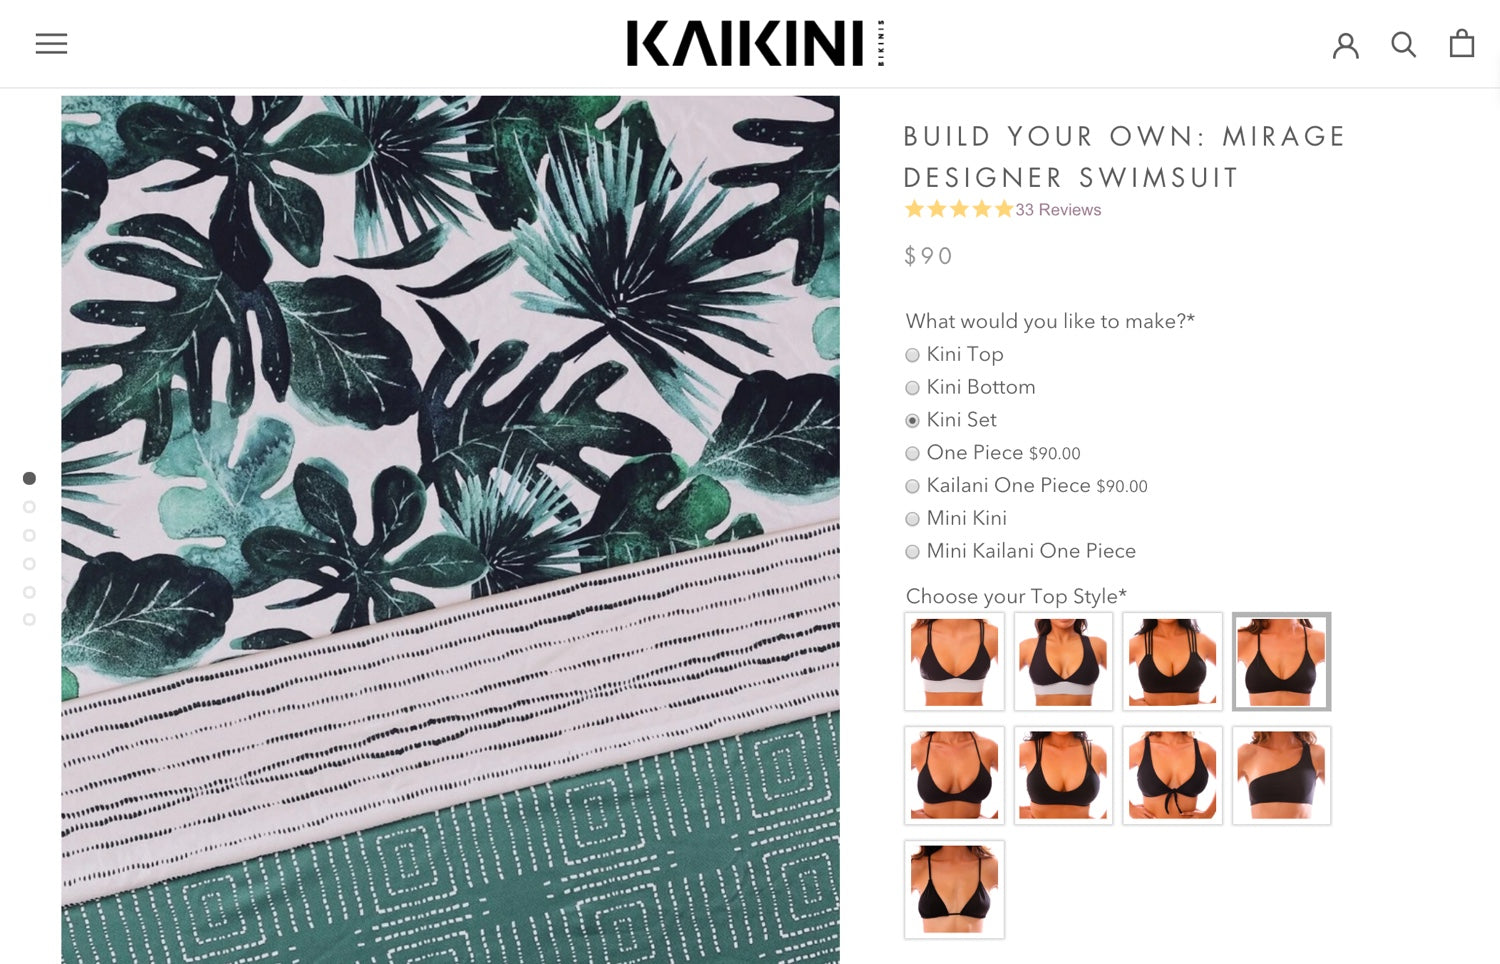 Pagina voor het samenstellen van je eigen bikini op de website van Kaikini